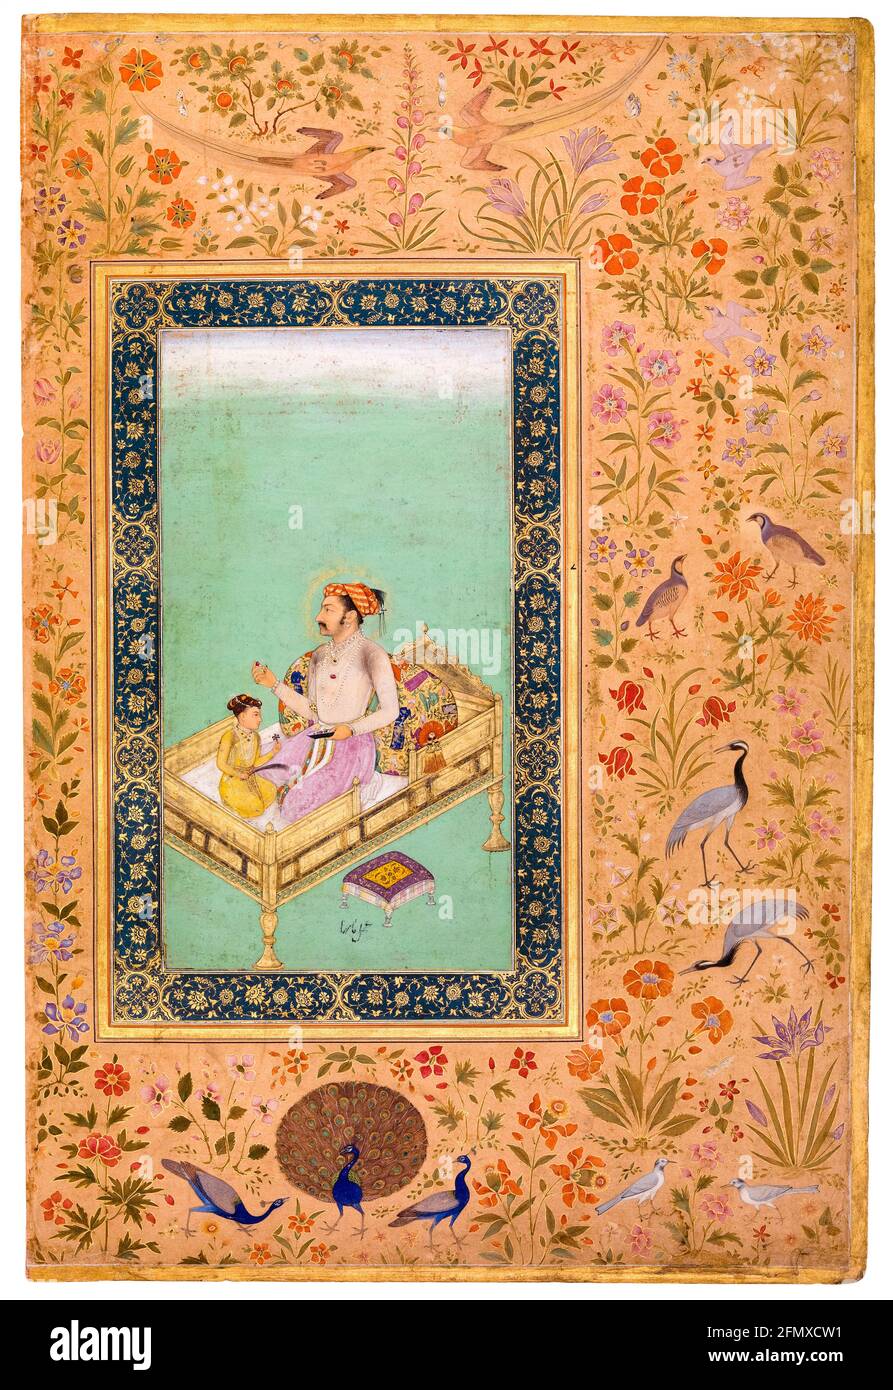 Emperor Shah Jahan (1592-1666), 5th Mughal Emperor and his son Dara Shikoh (1615-1659), painting, 1700-1799 Stock Photo